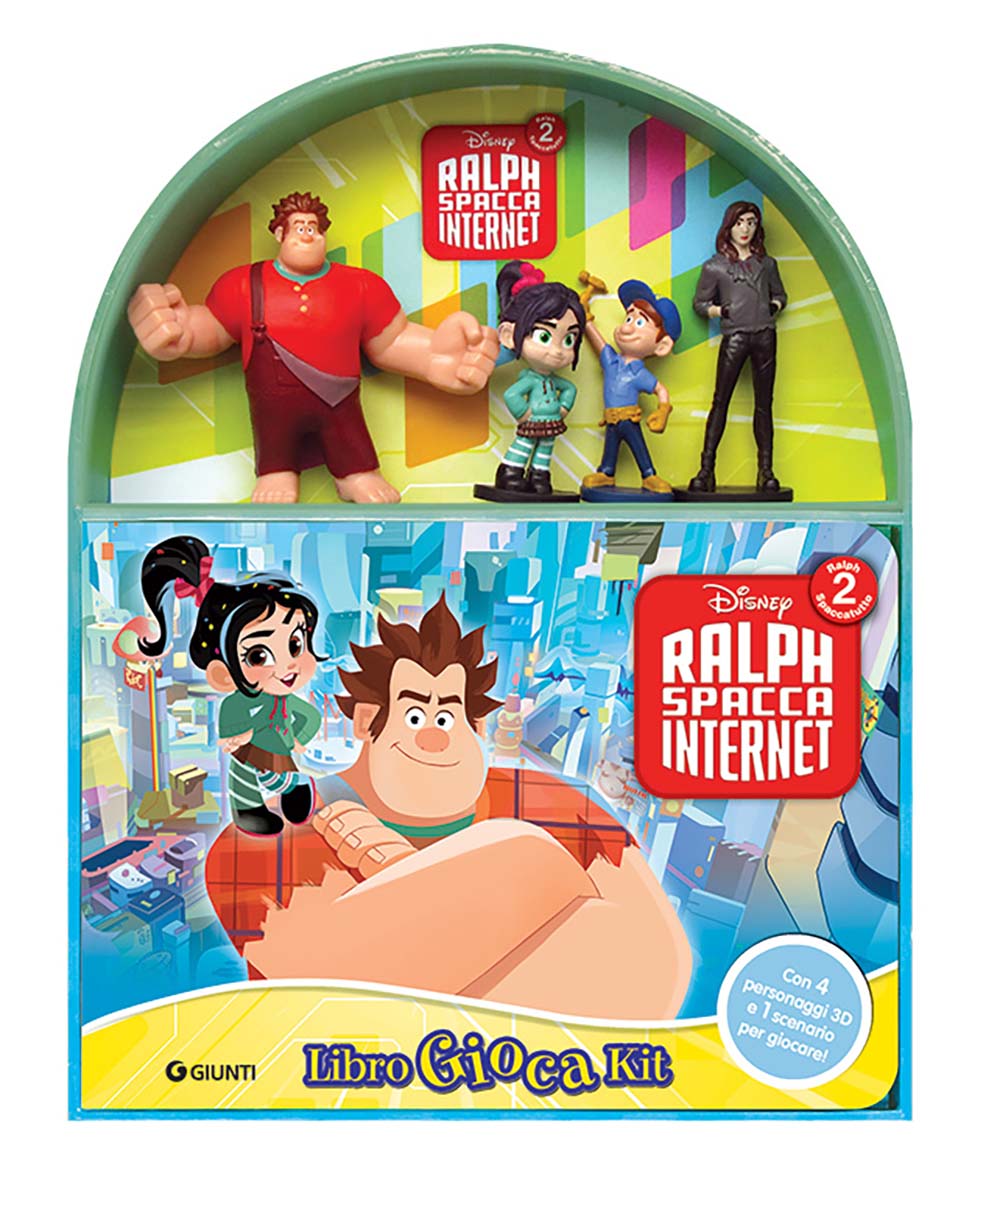 Ralph Spacca Internet - LibroGiocaKit. Con 4 personaggi 3D e 1 scenario per giocare!